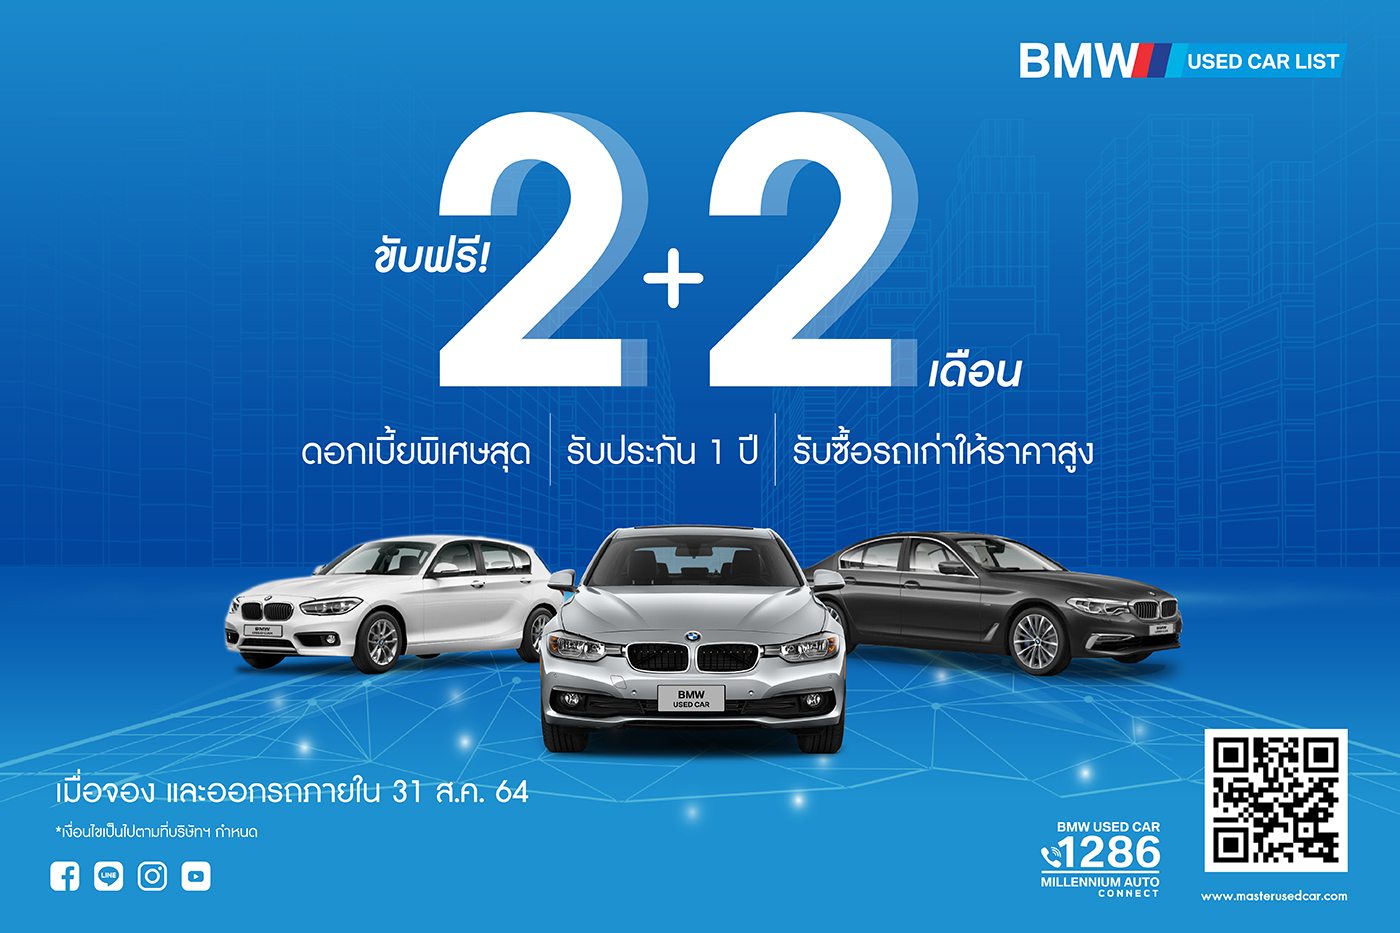 เป็นเจ้าของรถ BMW ได้ง่ายๆ ออกรถเดือนสิงหาคมนี้ ขับฟรี!  2 + 2 เดือน